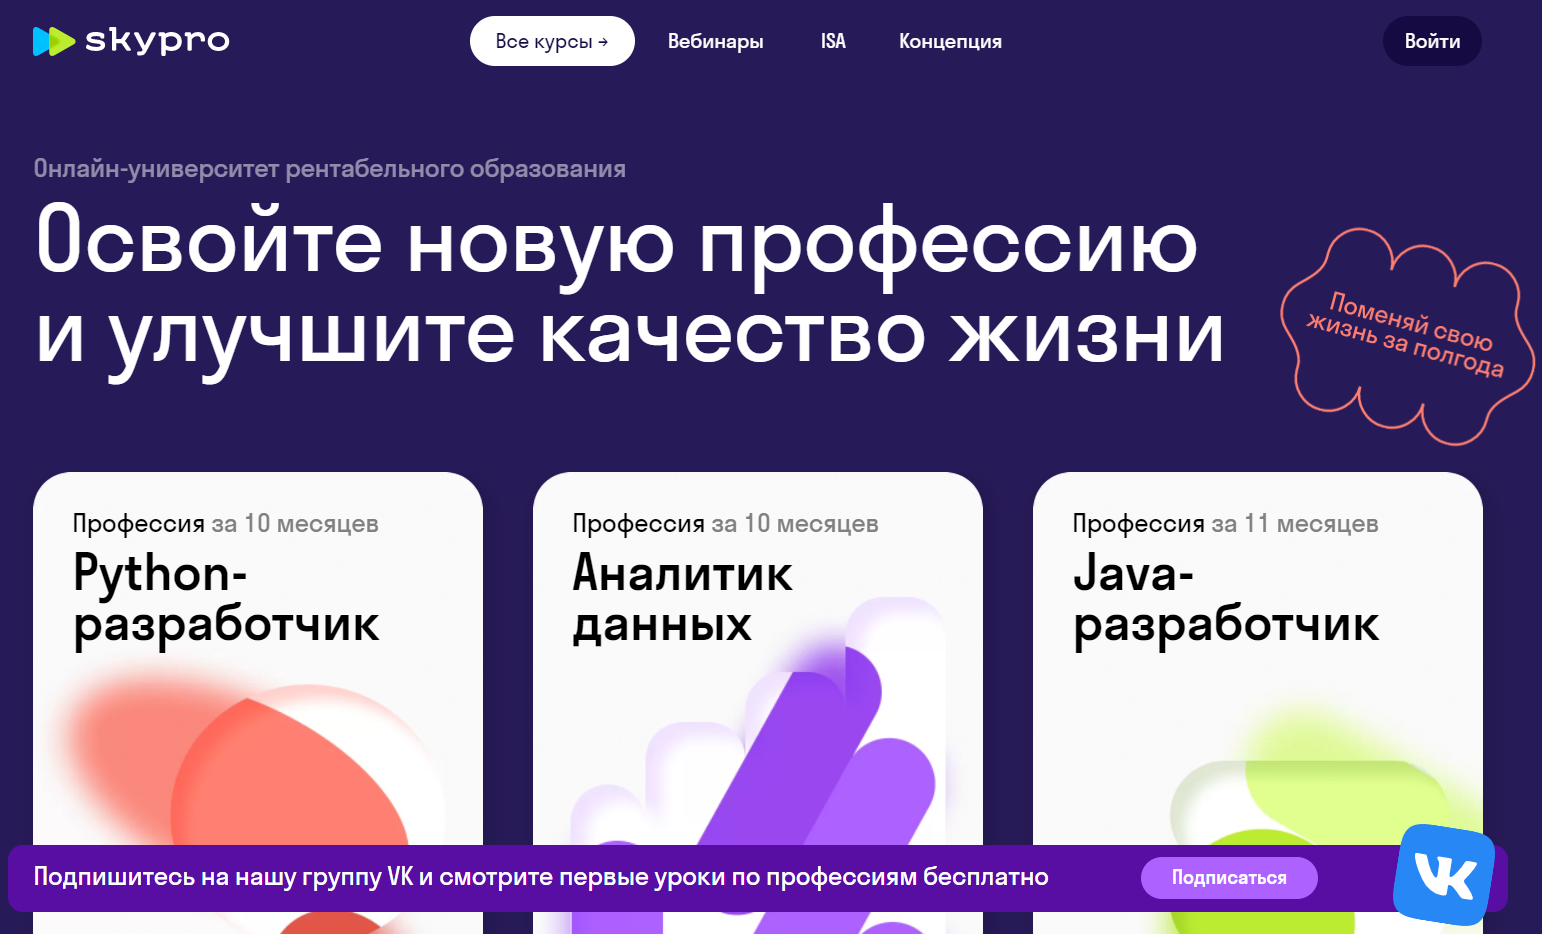 Скайпро официальный сайт онлайн-университета